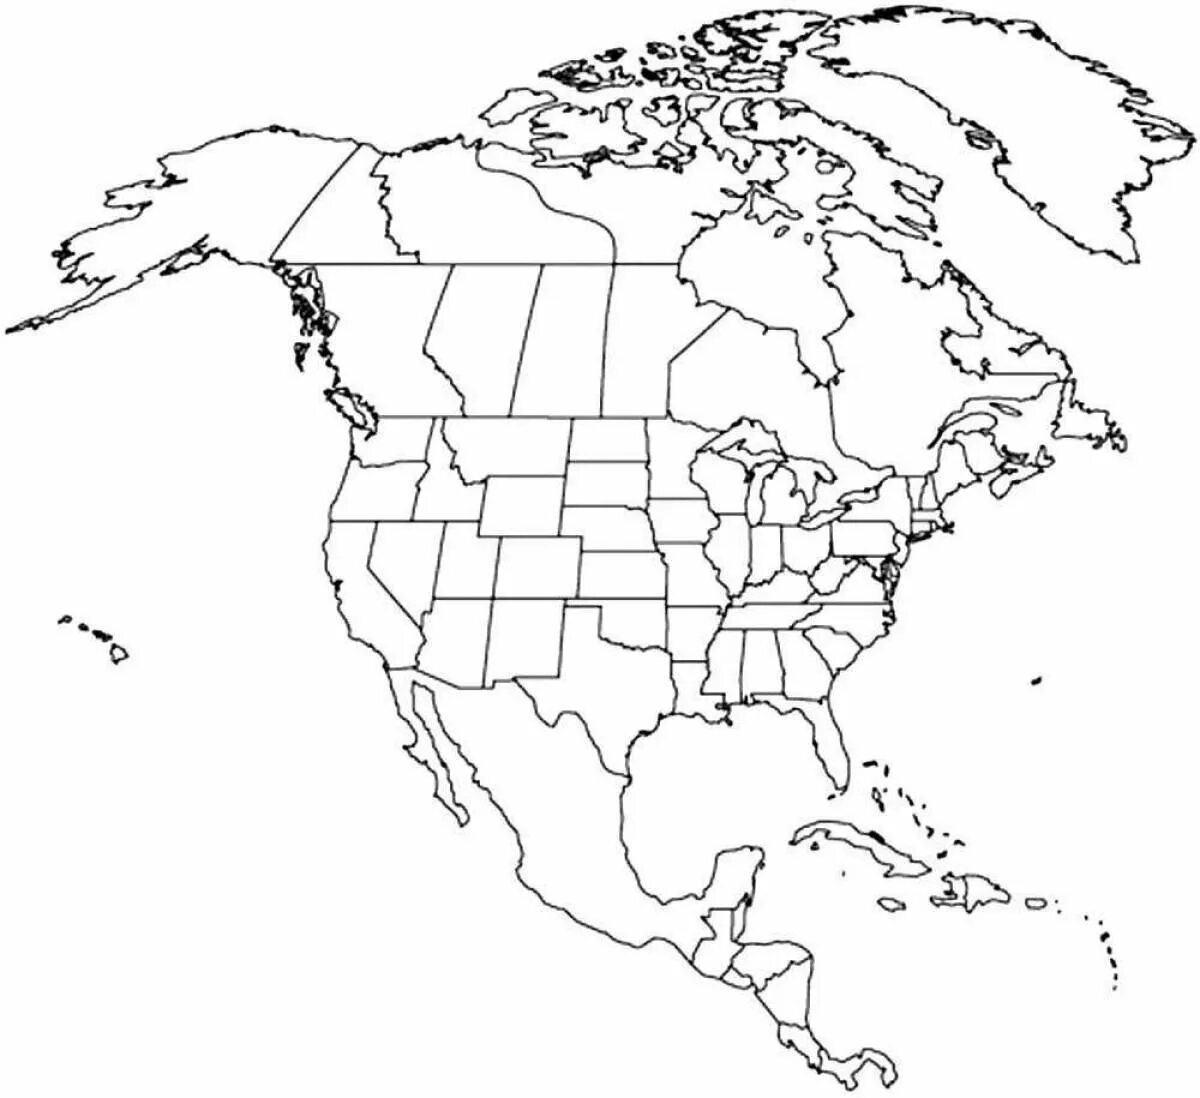 Страны и столицы северной америки контурная карта. Контурная политическая карта Северной Америки для печати. Контурная карта Северной Америки со Штатами. Политическая карта Северной Америки без названий. Политическая контурная карта Северной Америки.